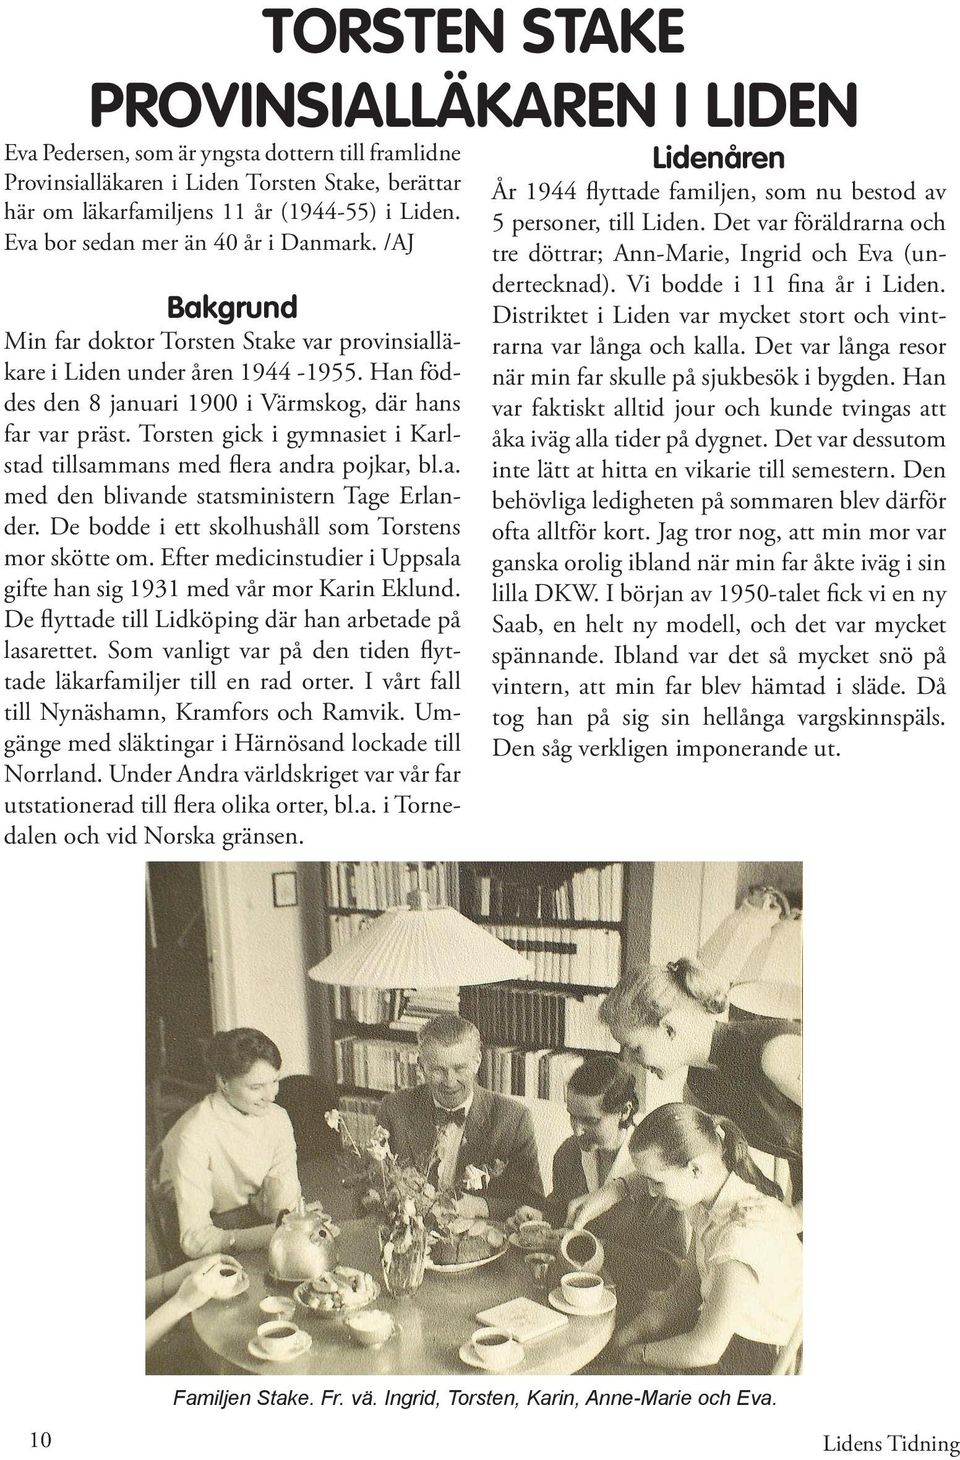 Torsten gick i gymnasiet i Karlstad tillsammans med flera andra pojkar, bl.a. med den blivande statsministern Tage Erlander. De bodde i ett skolhushåll som Torstens mor skötte om.